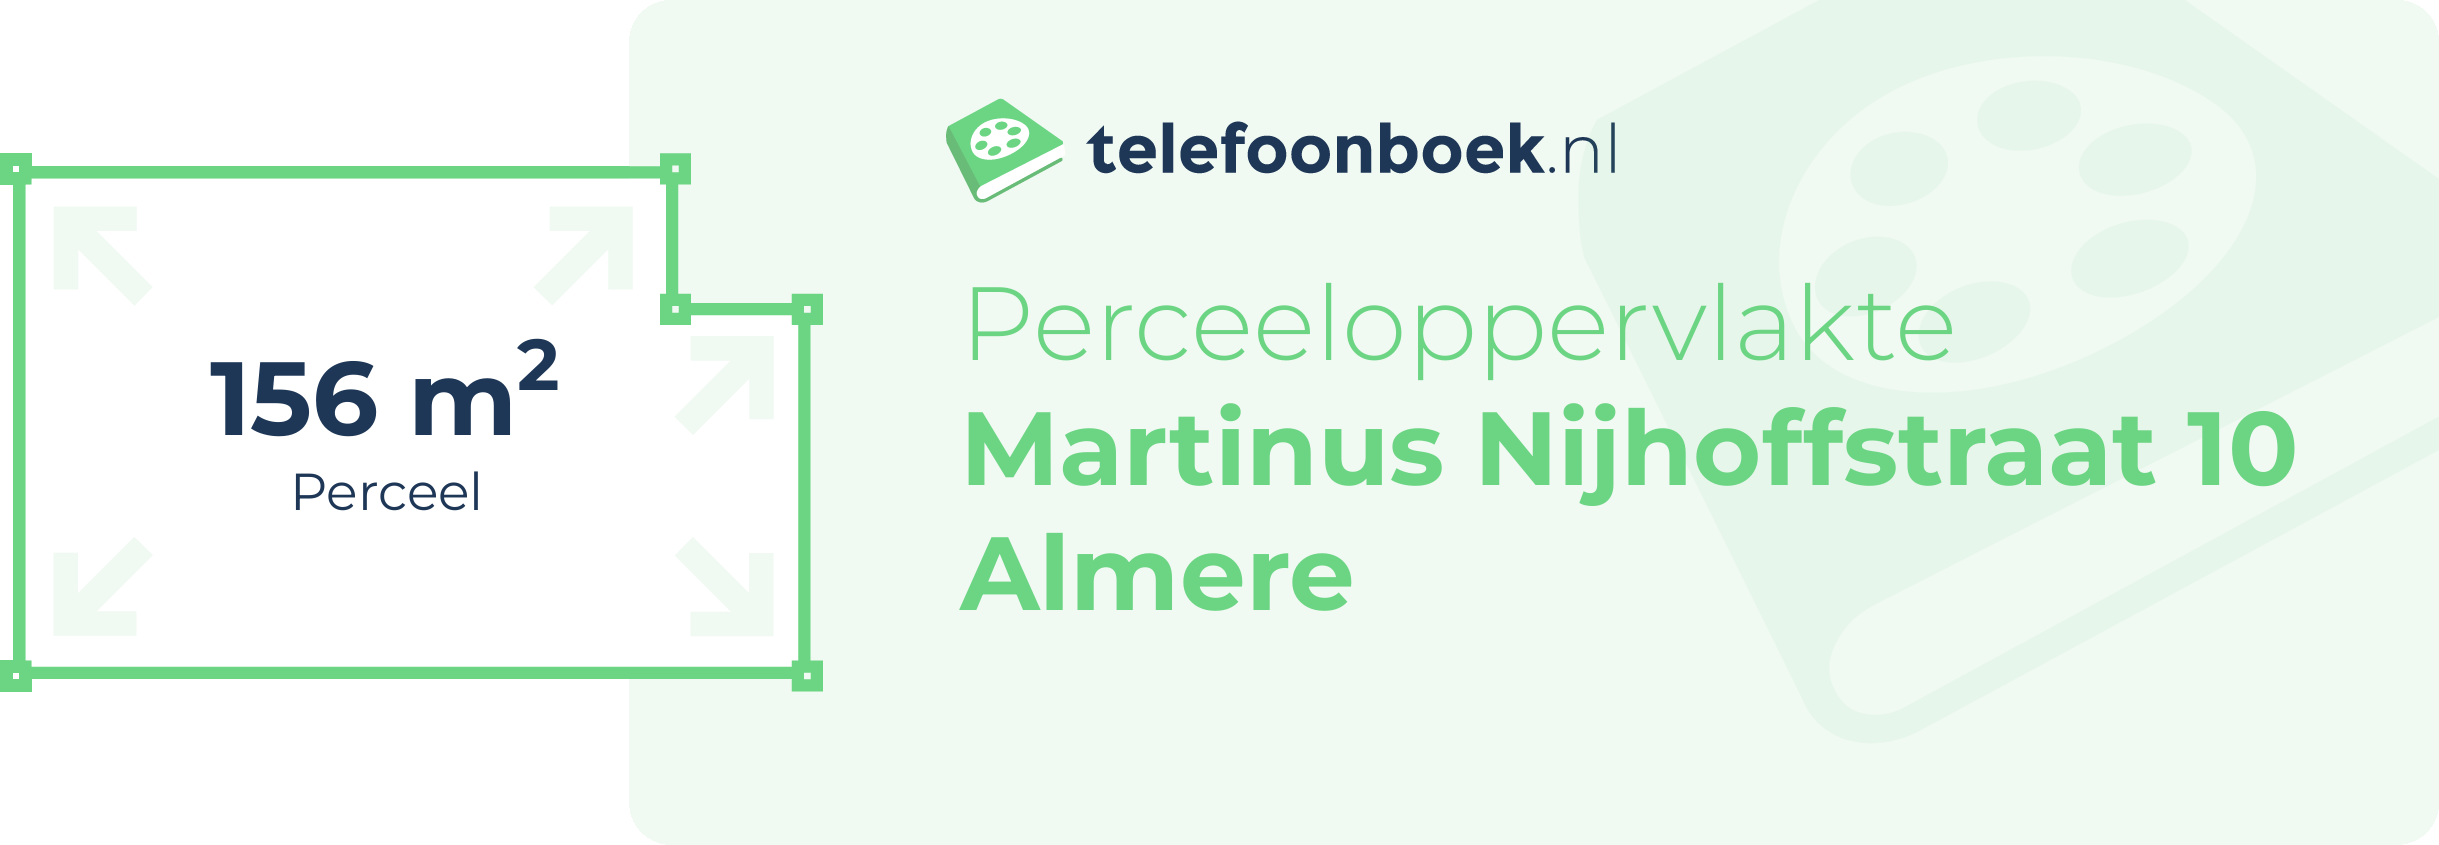 Perceeloppervlakte Martinus Nijhoffstraat 10 Almere